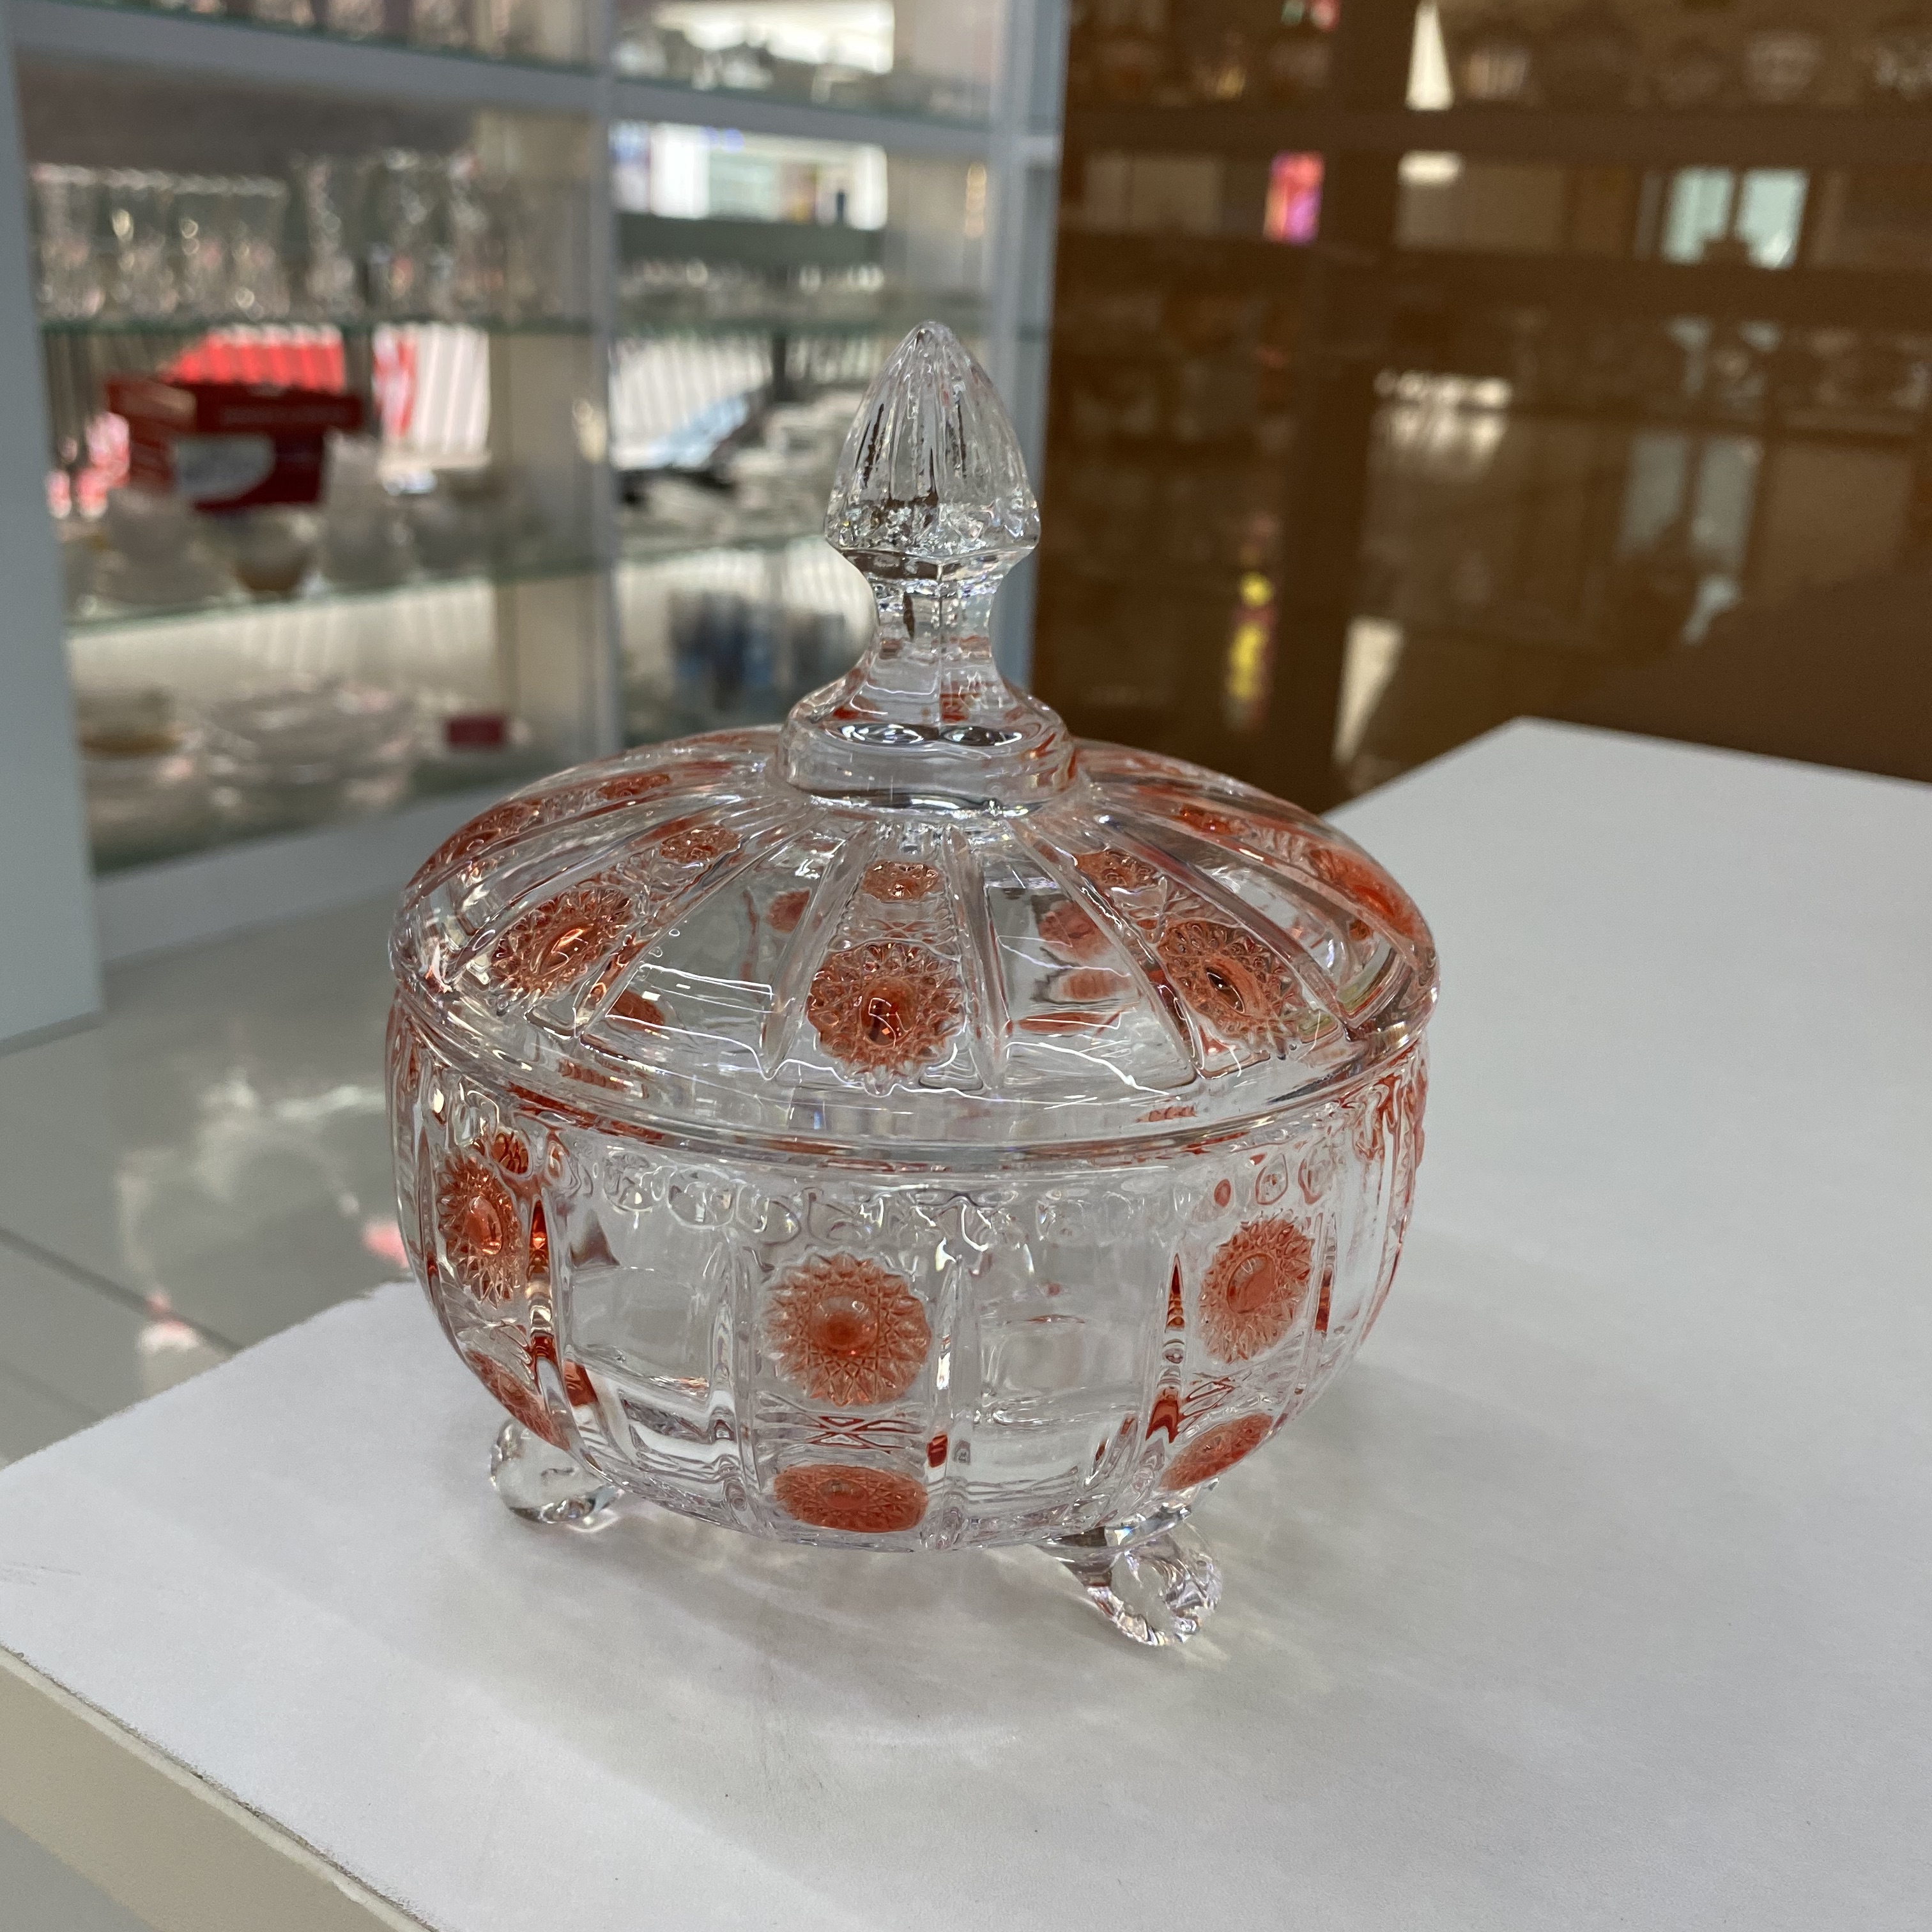 橘色带盖子厂家直销玻璃蒙古包水晶玻璃糖缸玻璃首饰盒蒙古包水晶糖缸